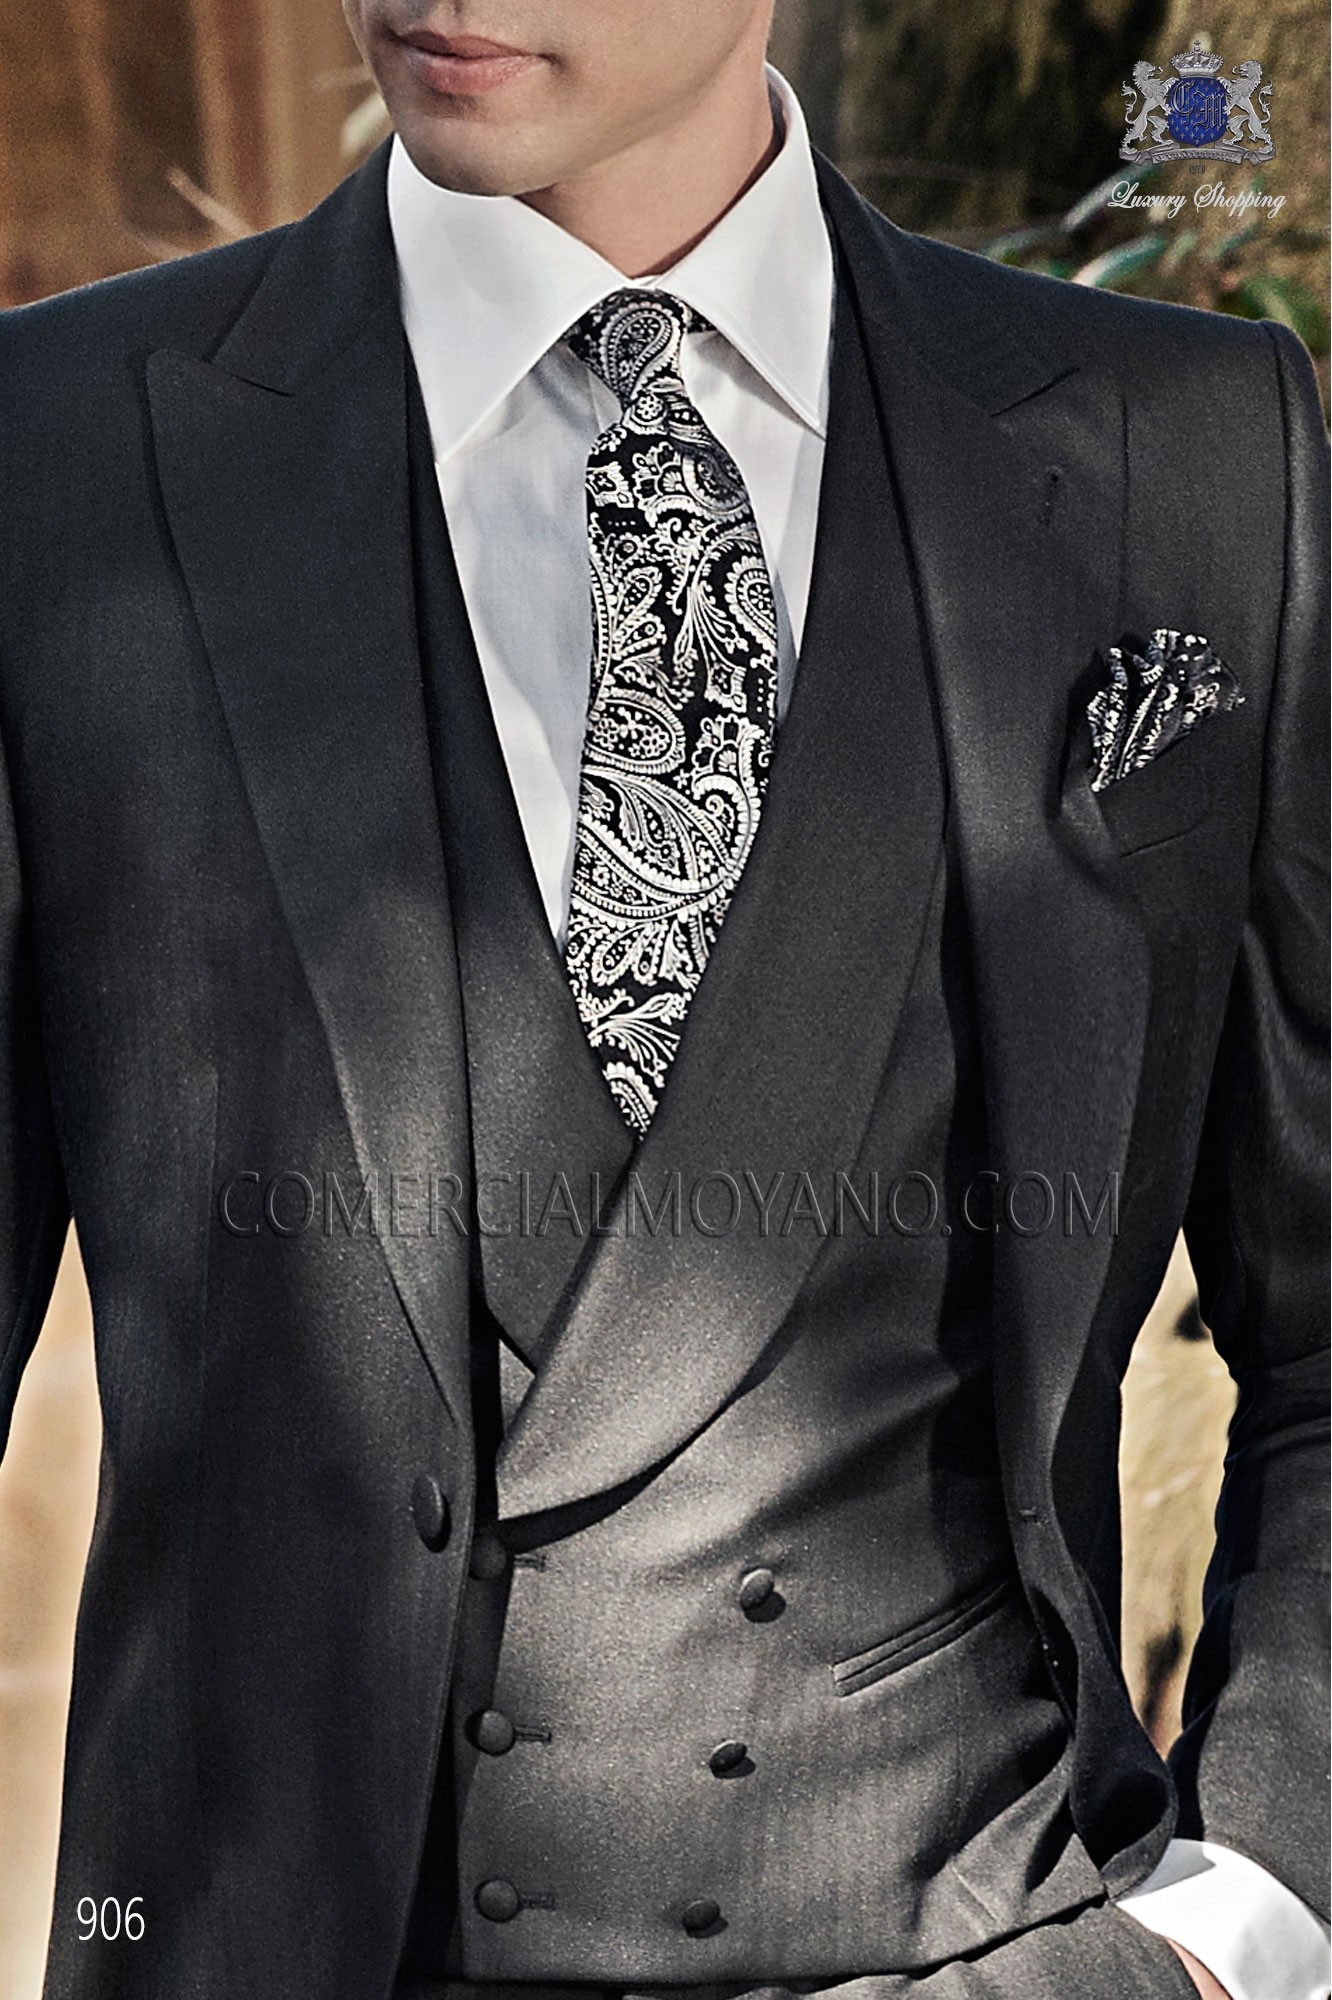 Italian gentleman black men wedding suit, model: 906 Mario Moyano Gentleman Collection